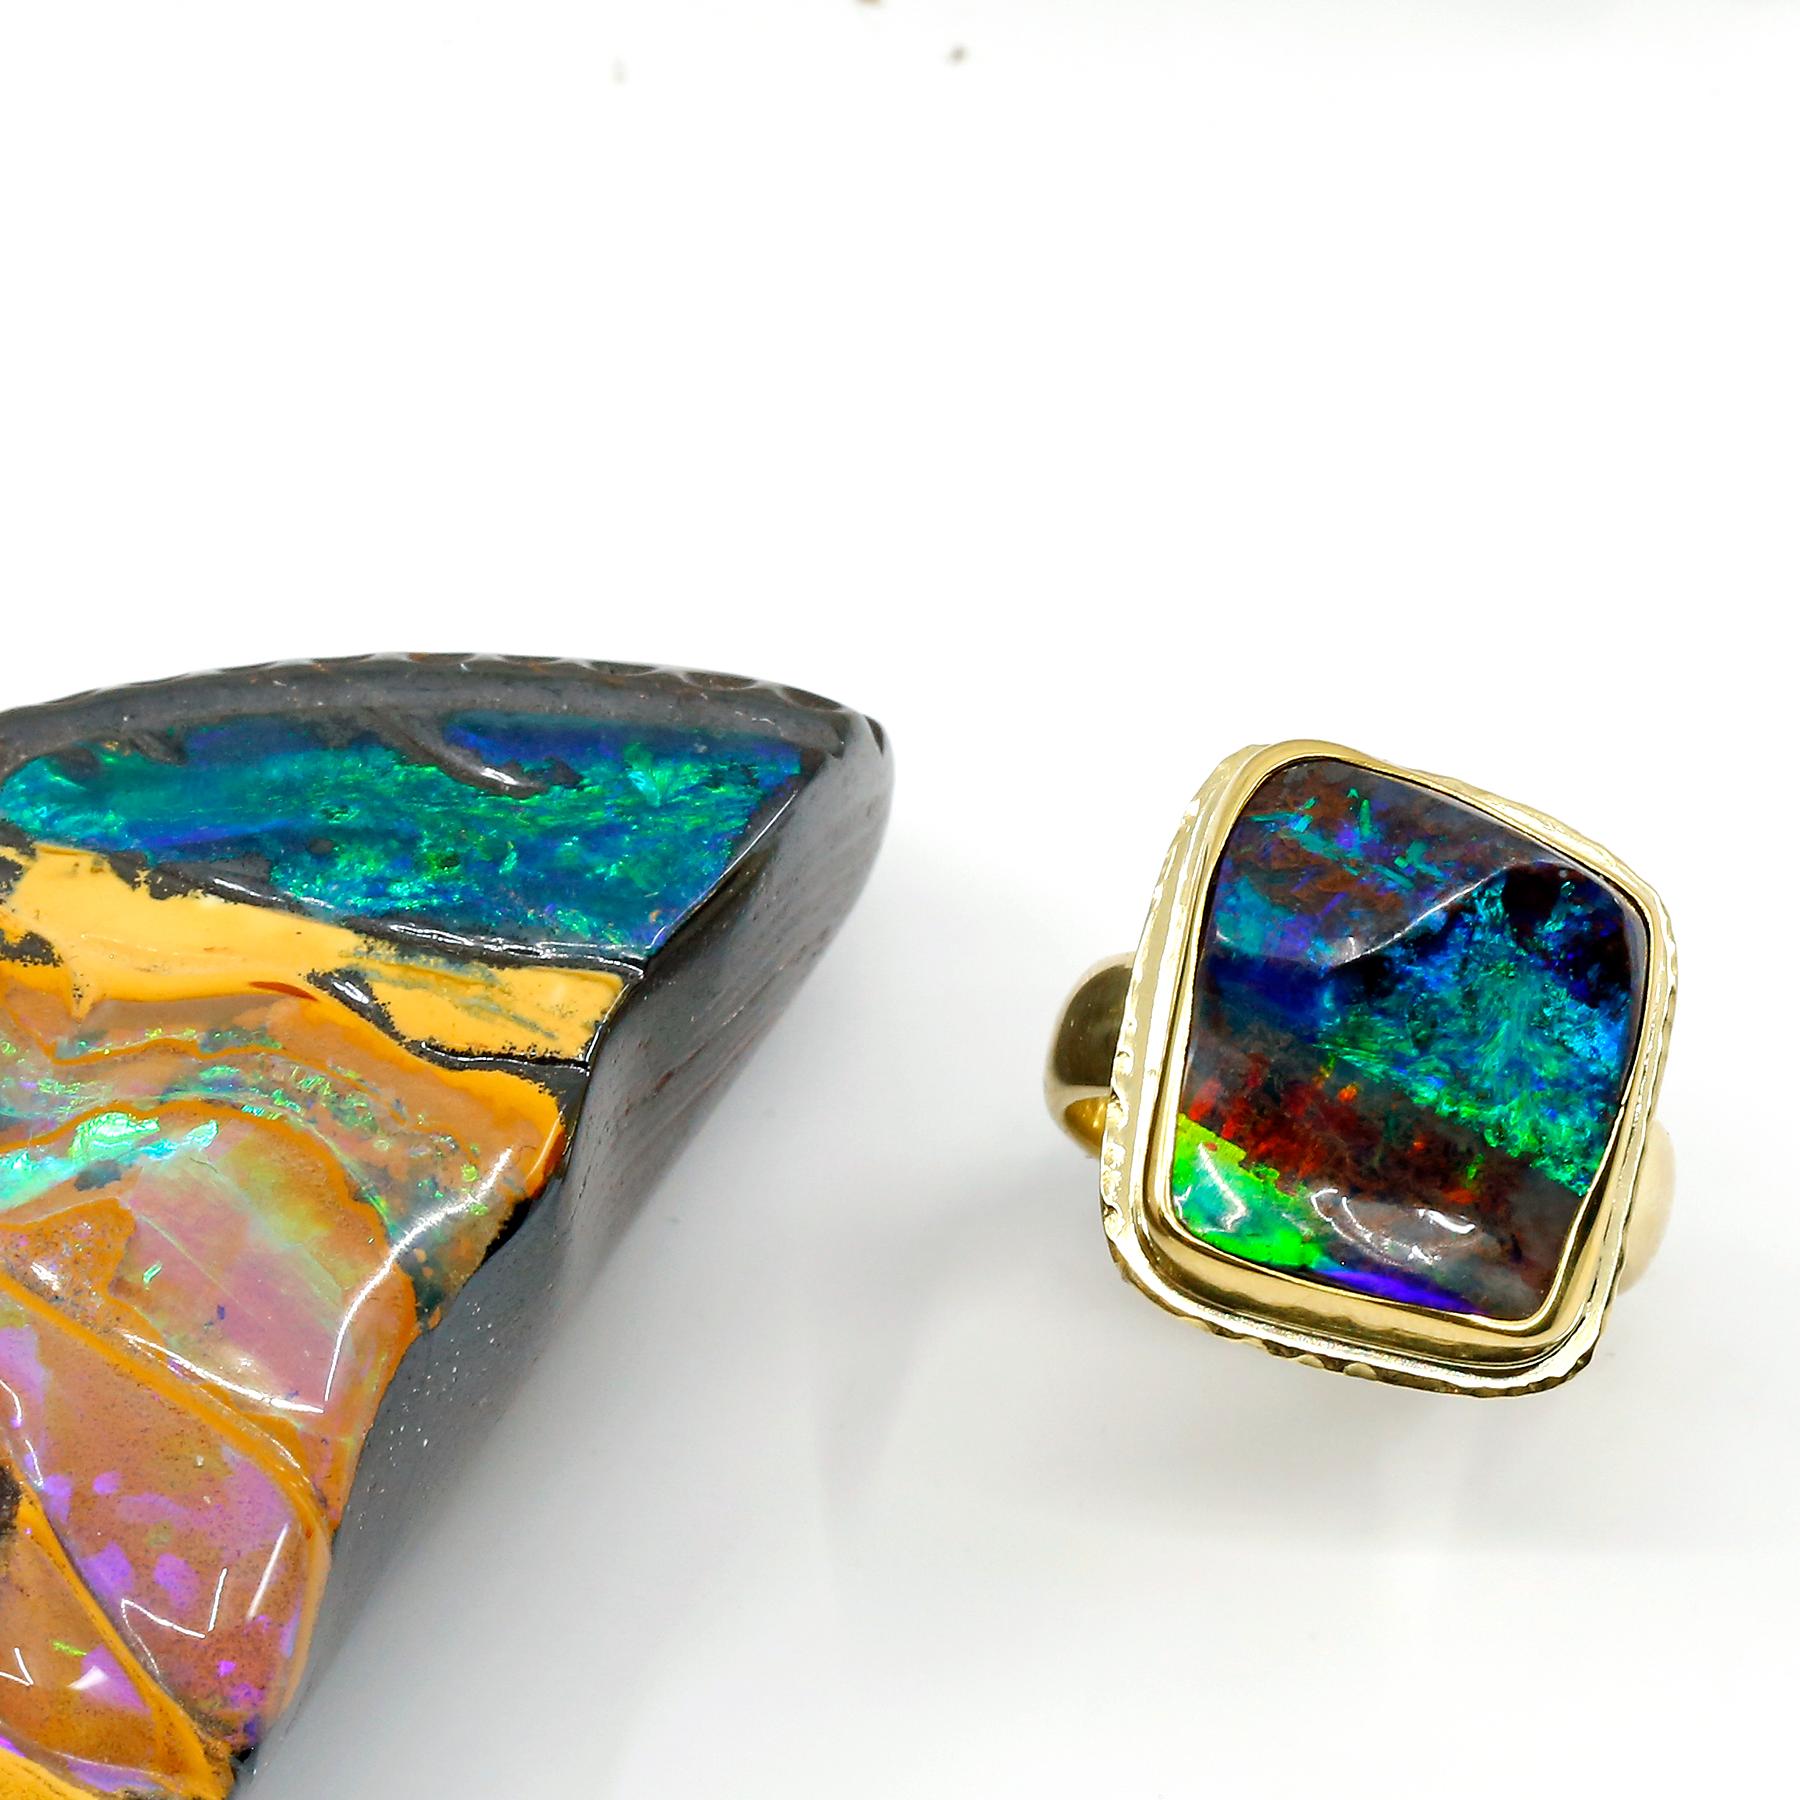 Kunstschmuck ist so einzigartig wie seine Sammler.  Dieser Boulder-Opal hat nicht nur die blauen, grünen und roten Blitze, die jeder liebt, sondern auch die einzigartige Qualität eines Pyramidensteins.  Das bedeutet, dass die Oberfläche nicht flach